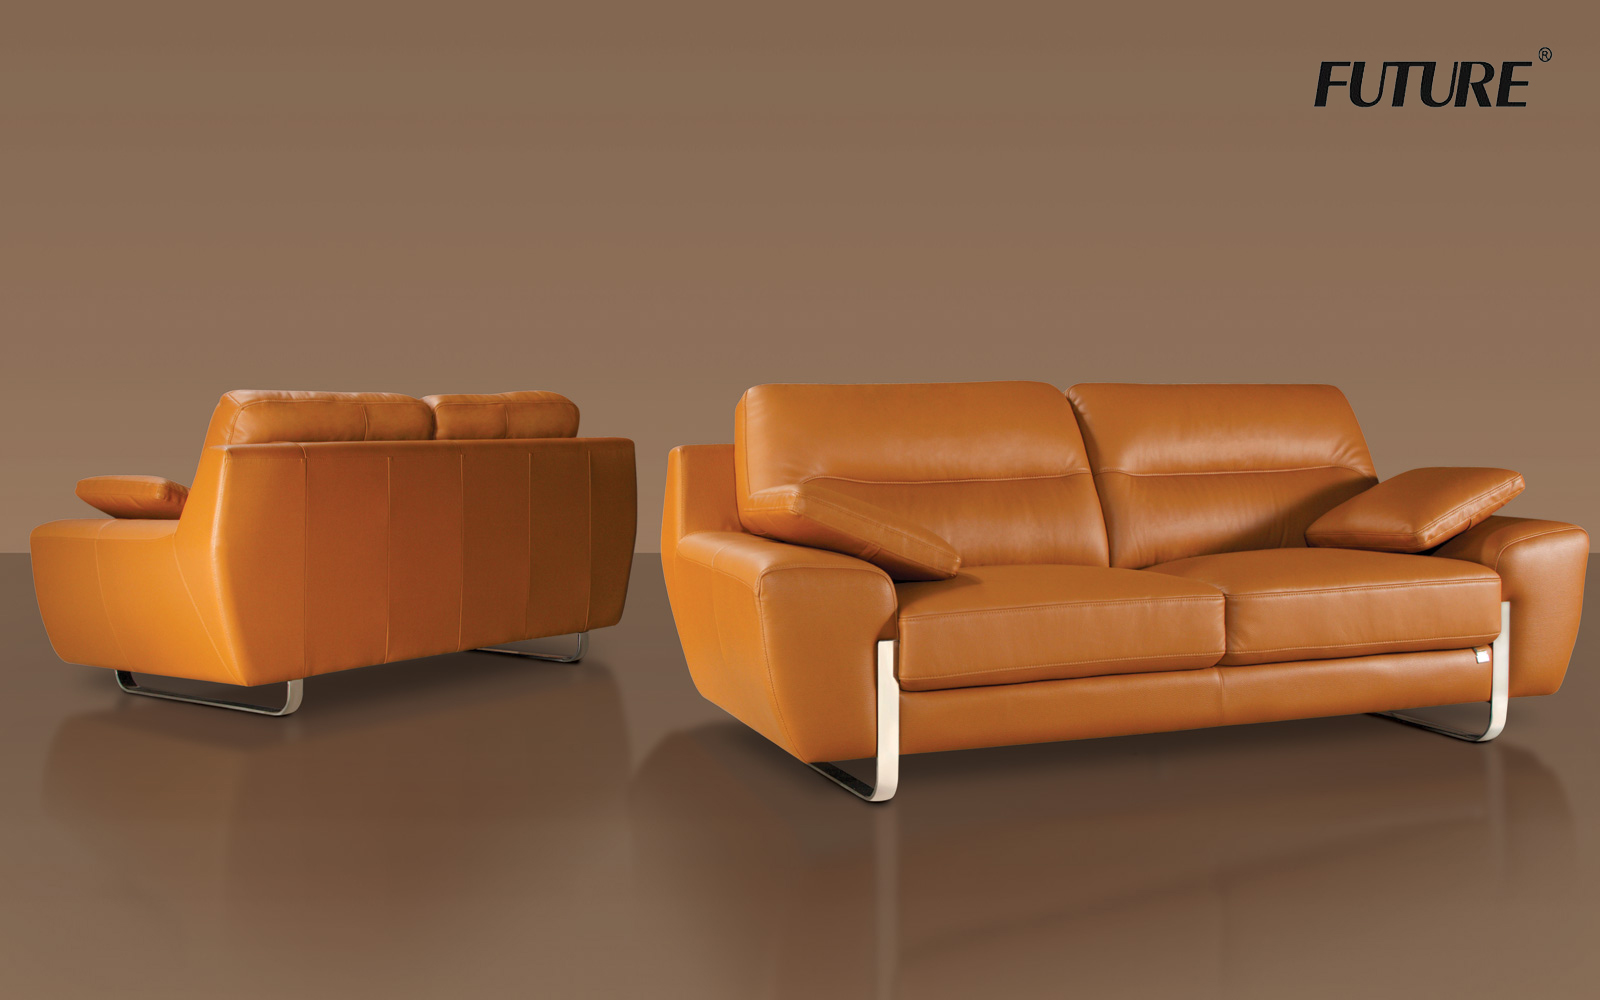 Sofa da thật là những mẫu sofa hàng đầu được nhiều người săn đón - Ảnh 3